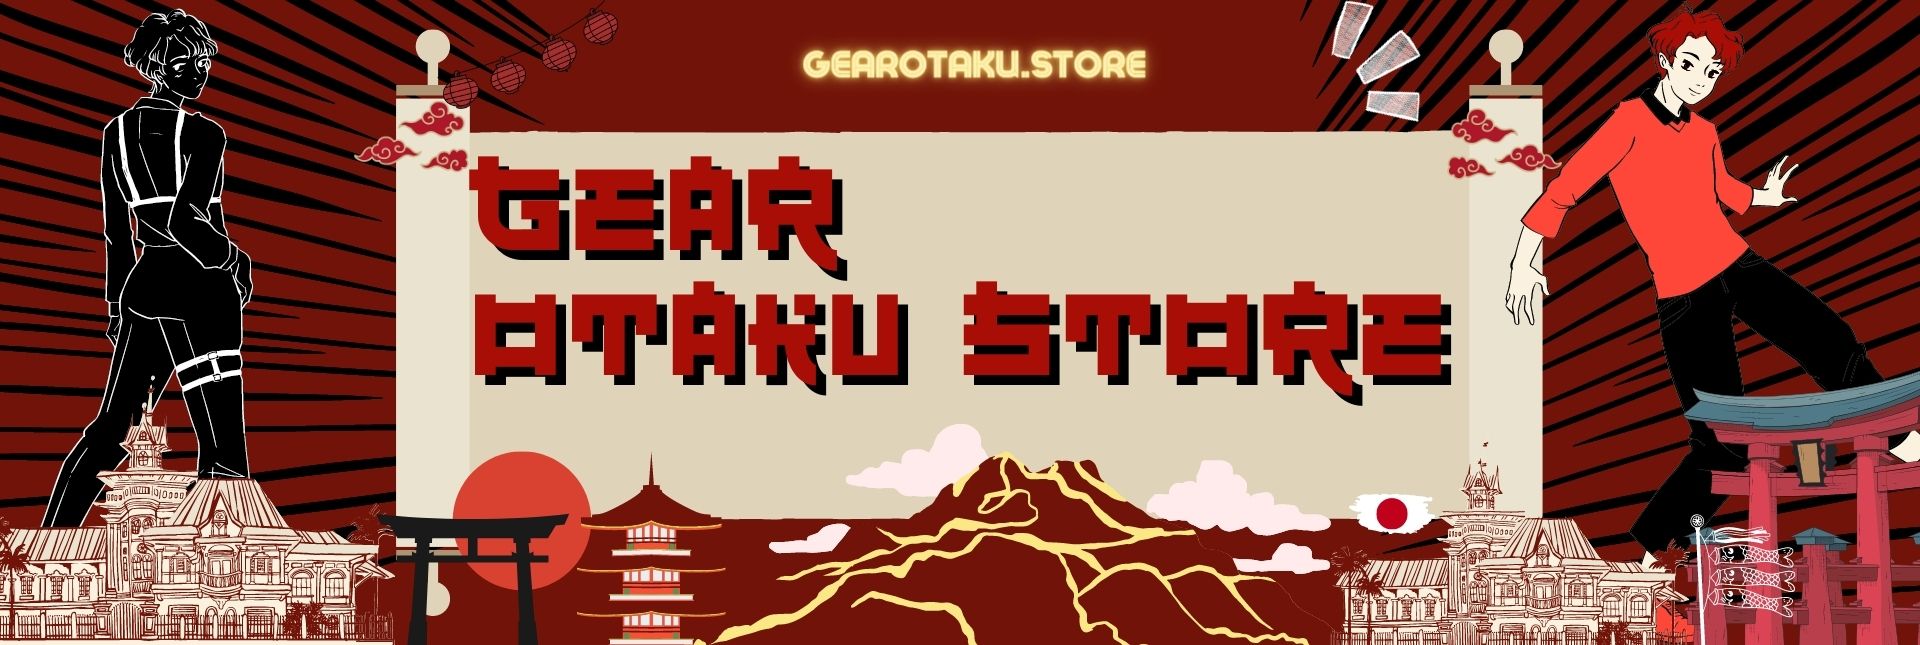 Gear Otaku Shop Banner